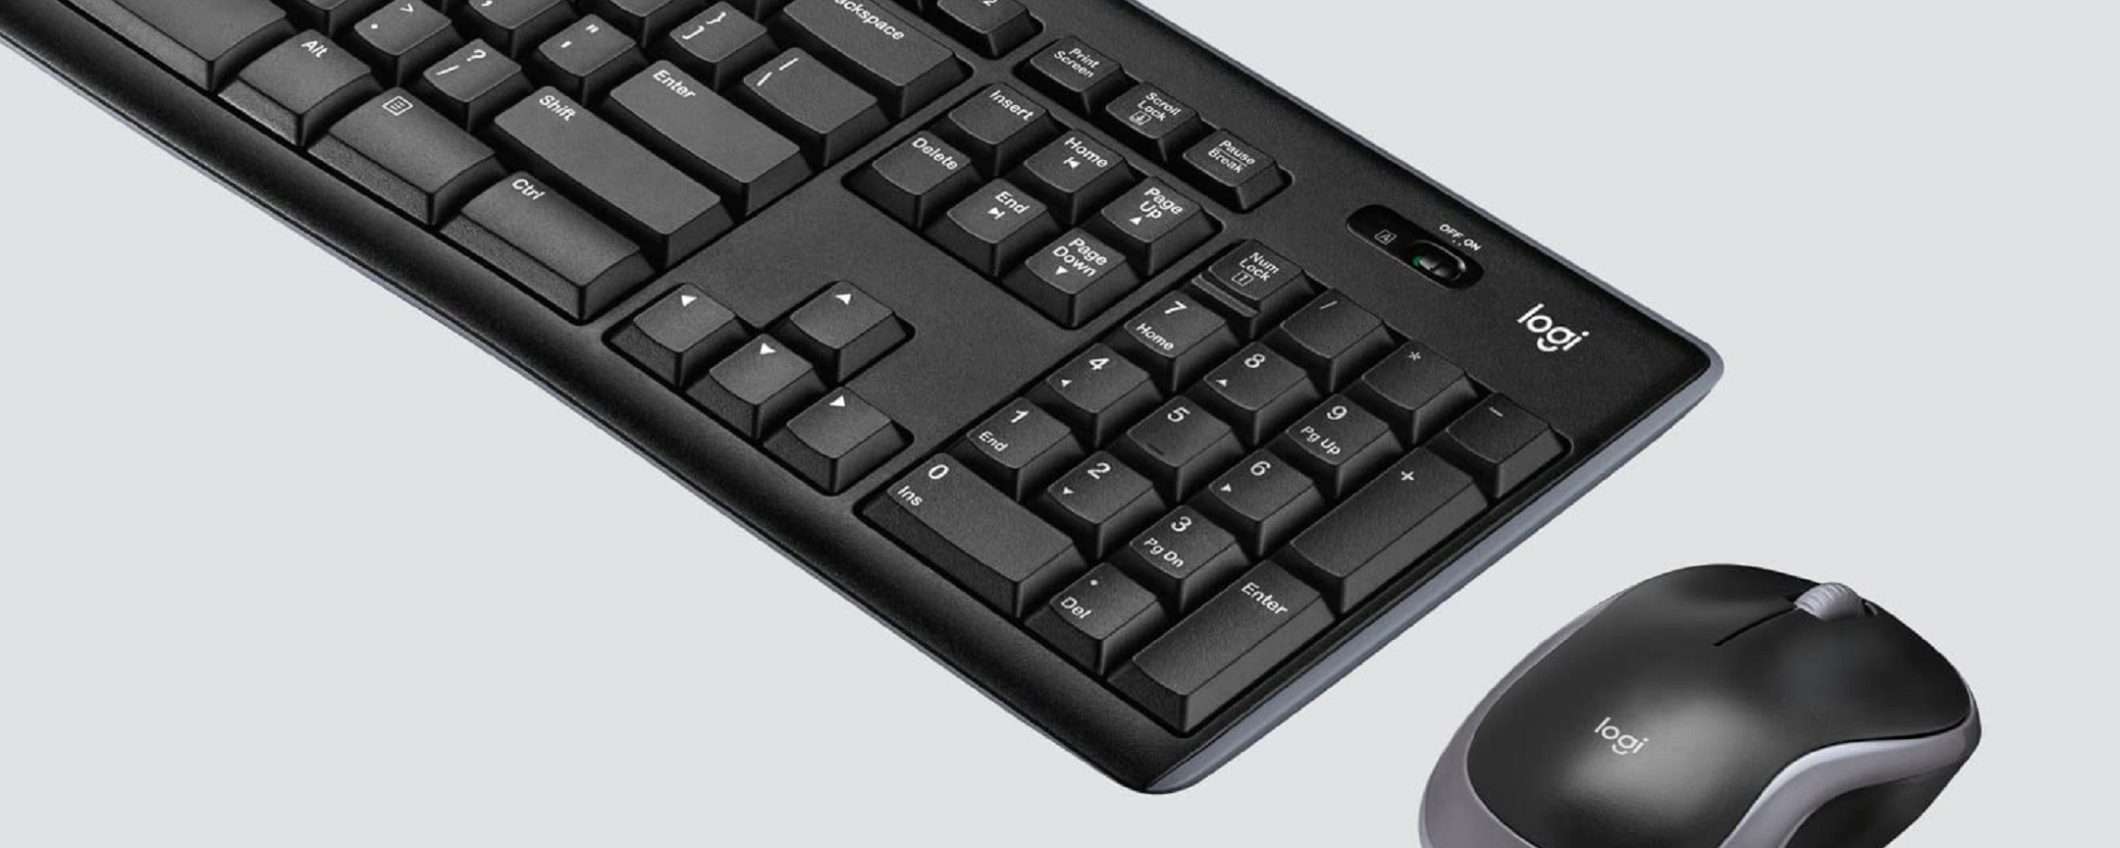 Logitech MK270: bundle mouse + tastiera a soli 24€ su Amazon